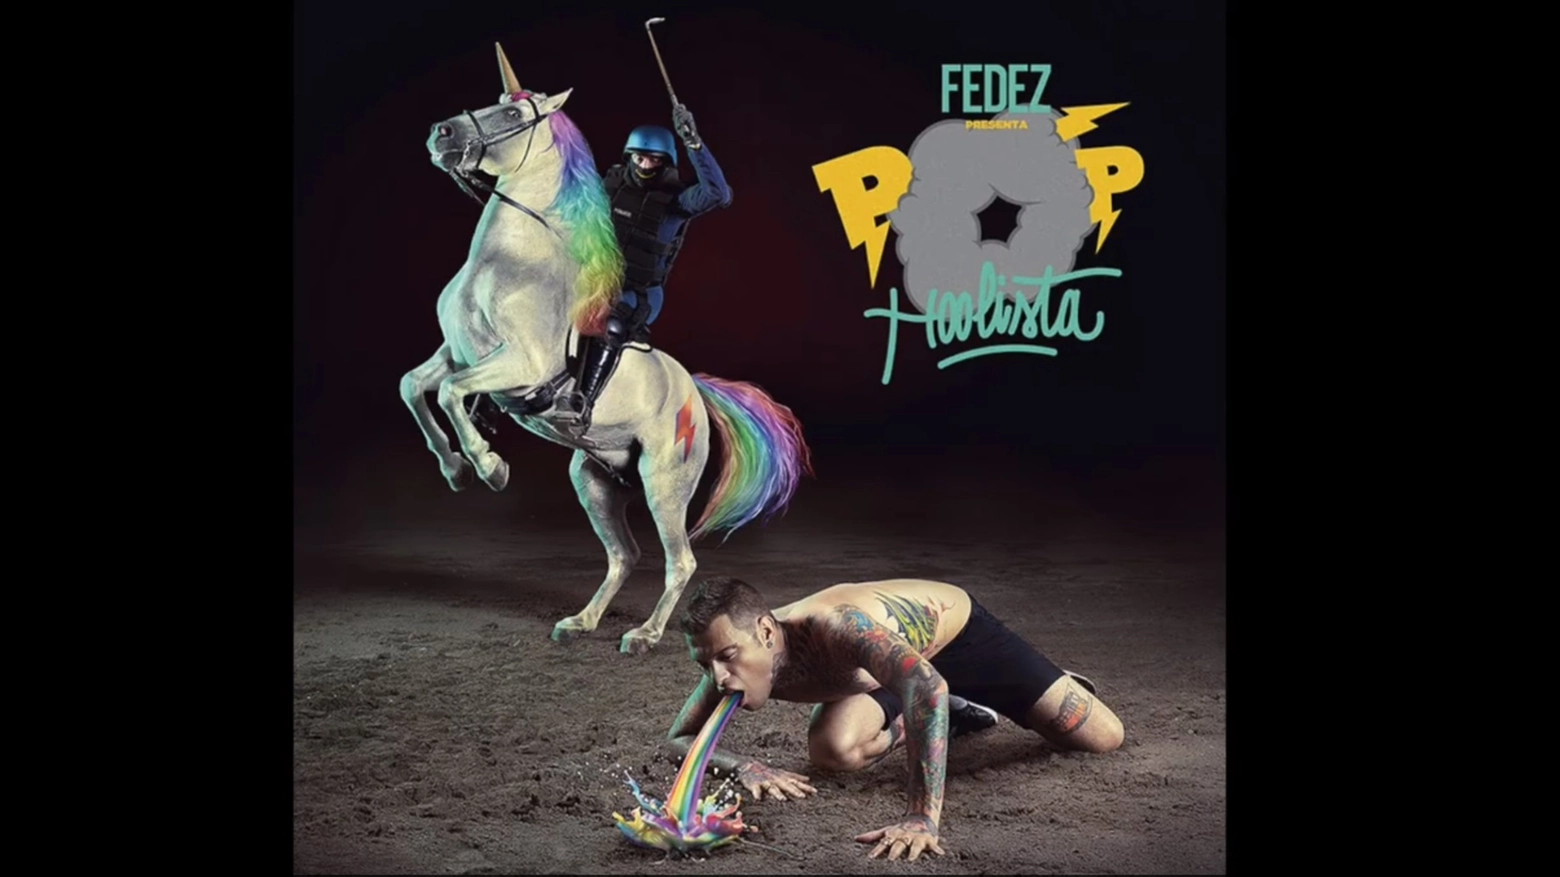 La copertina di Pop-hoolista, l'album di Fedez al centro delle polemiche